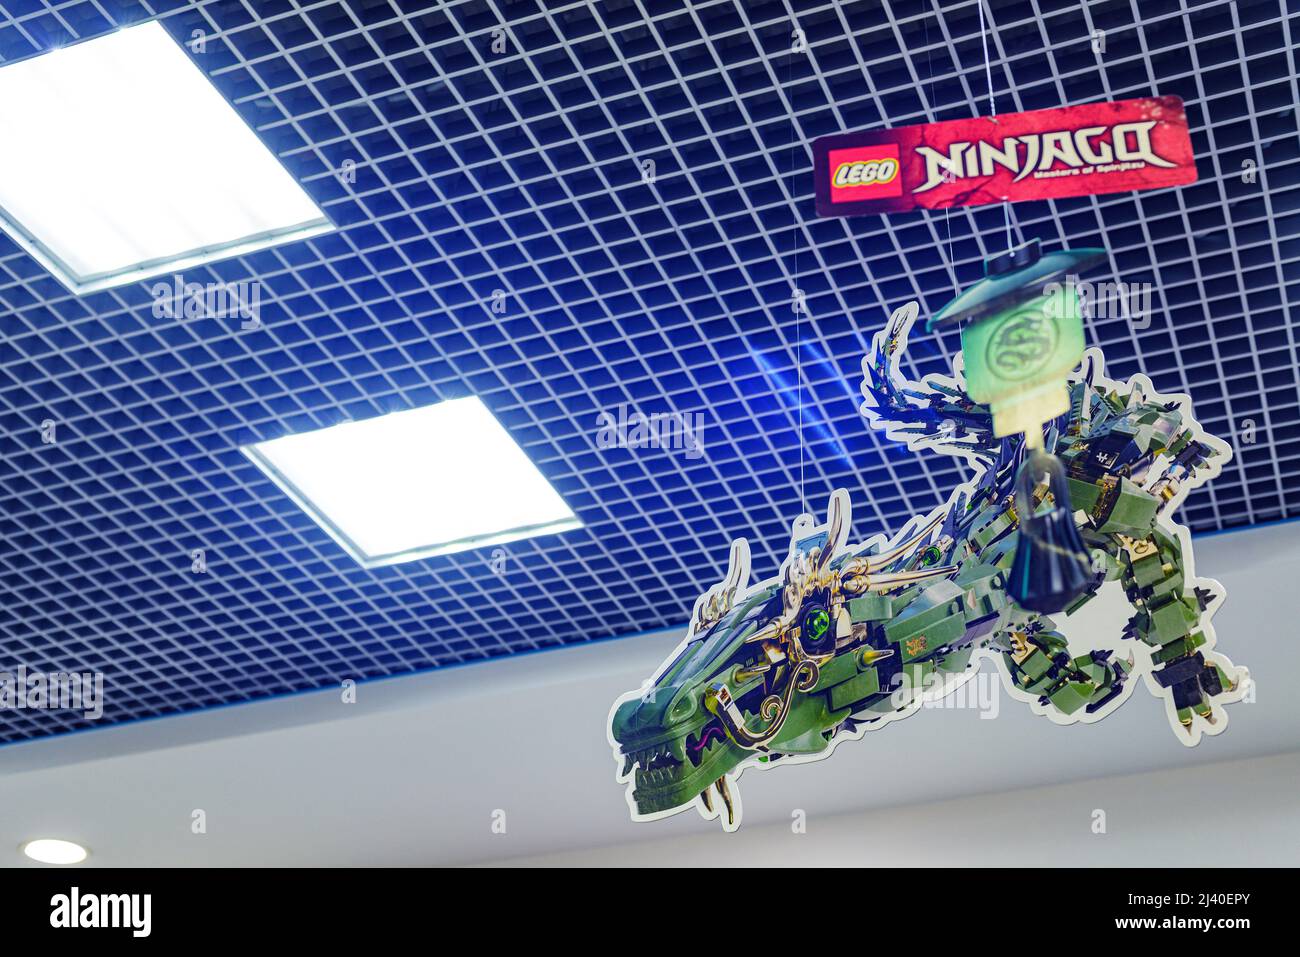 2021: LEGO Ninjago publicité décorative Dragon suspendu dans magasin de jouets Banque D'Images